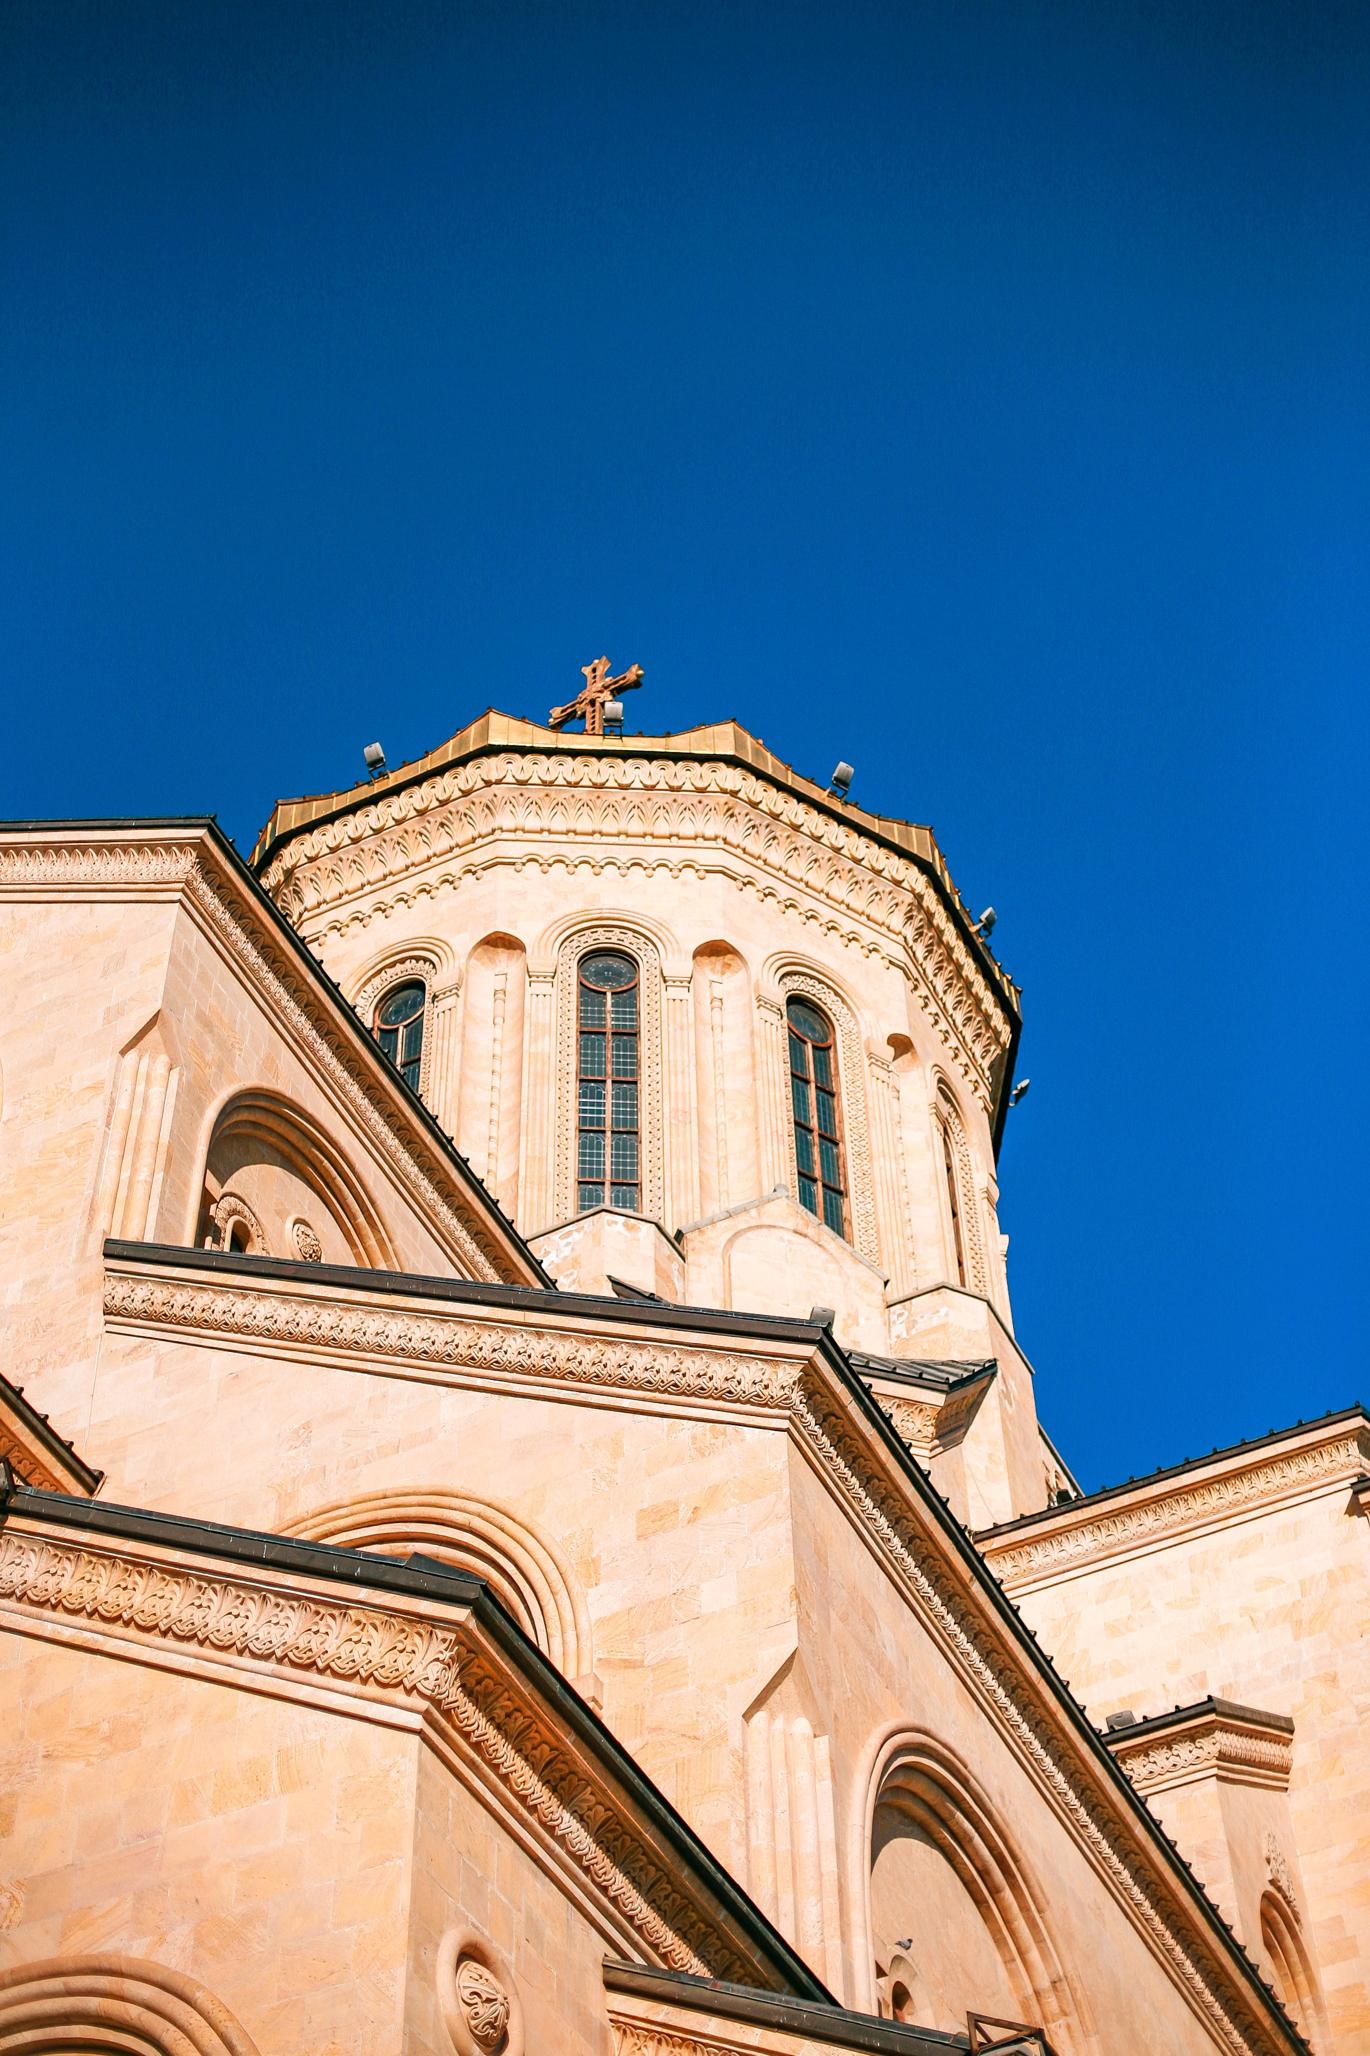 Architektura i wyjątkowe cechy katedry świętej trójcy